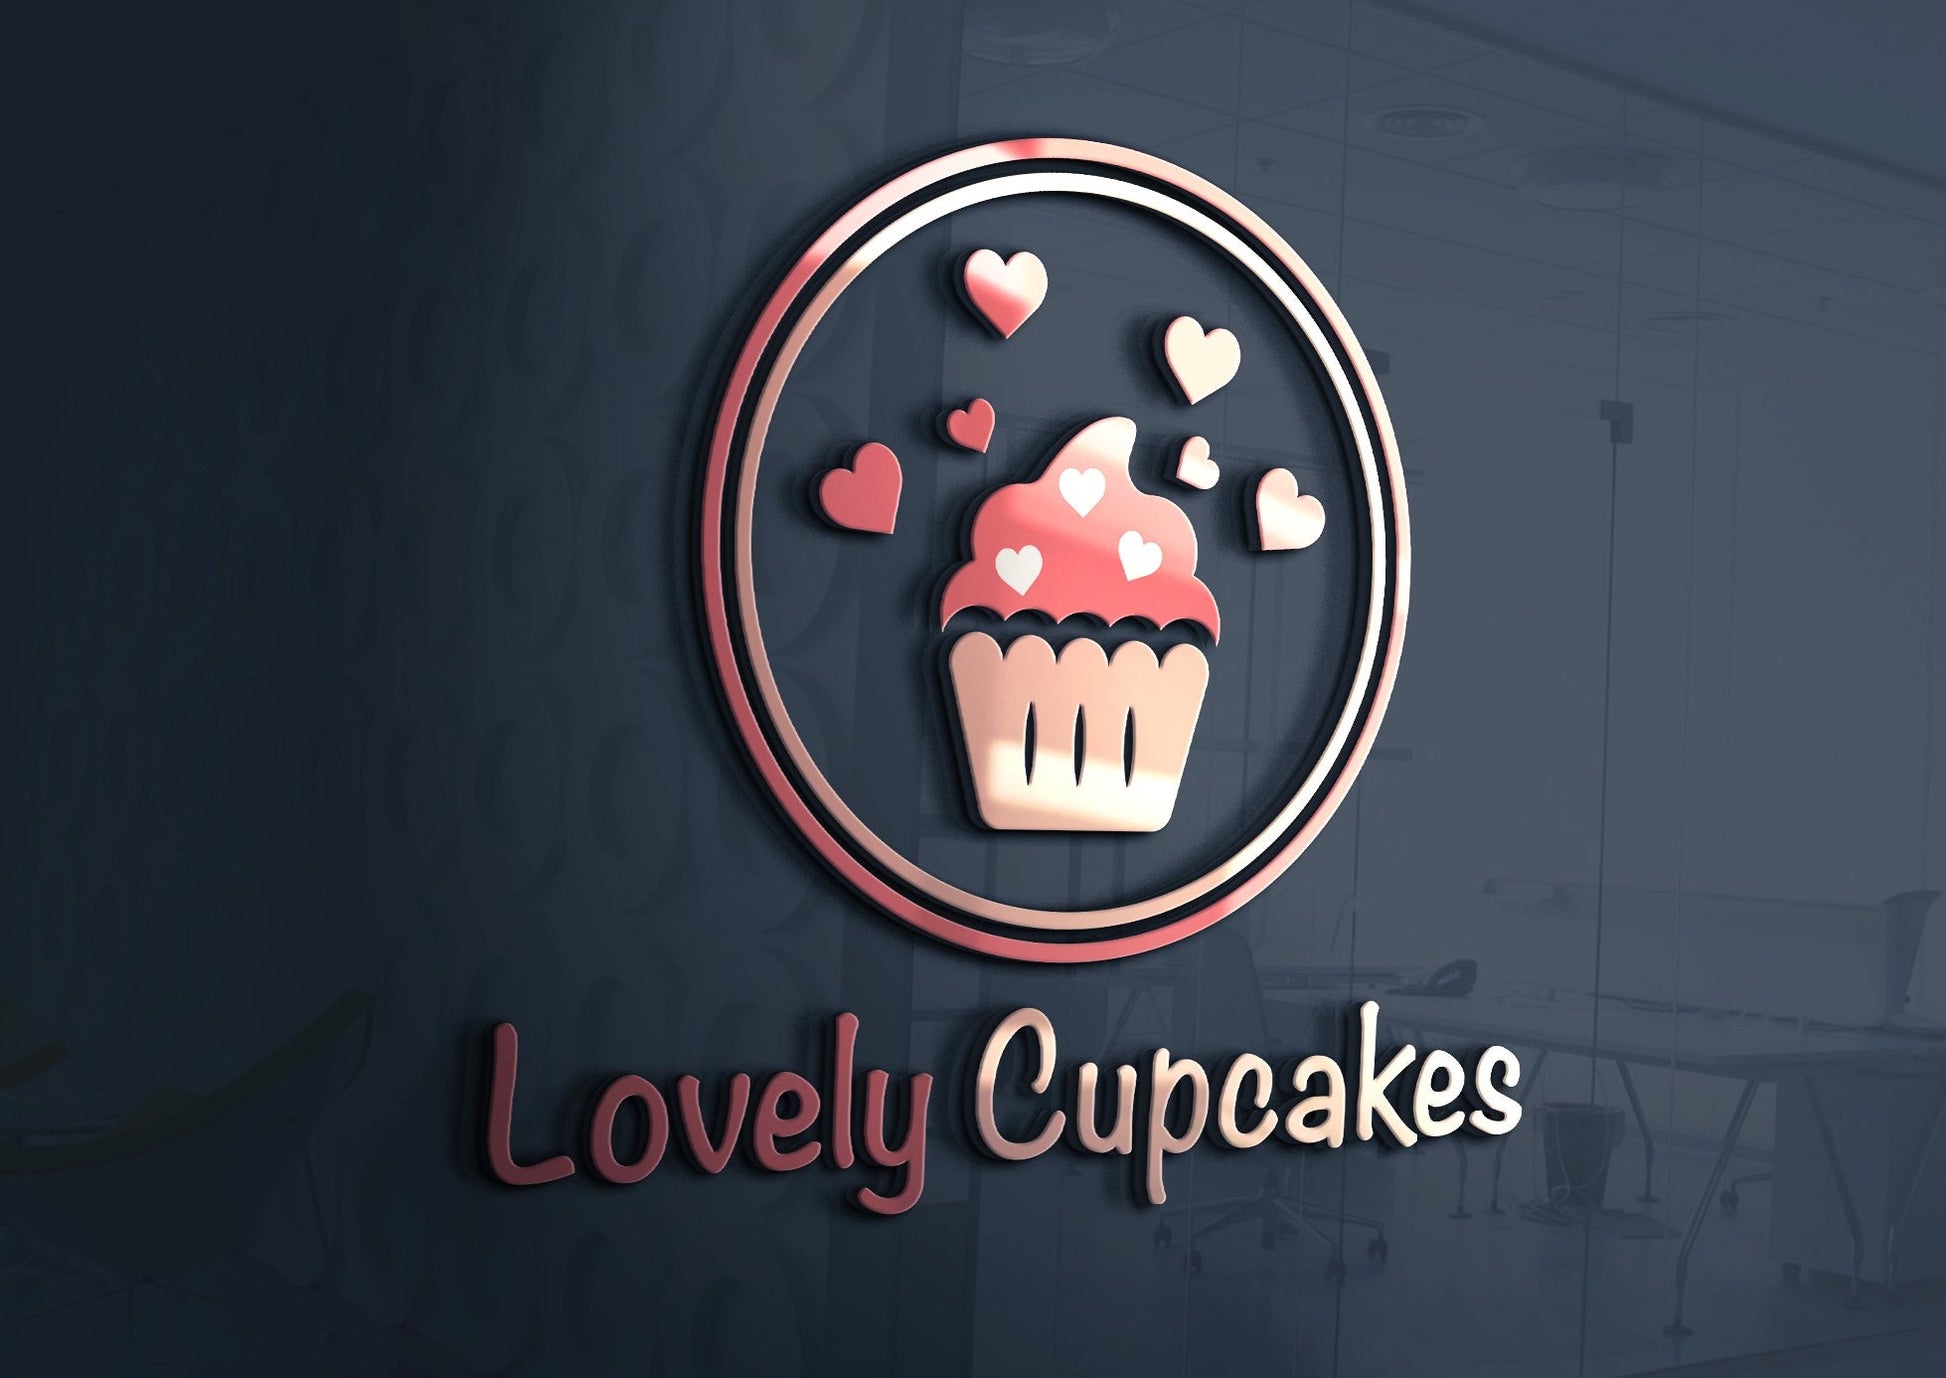 logo bakery design